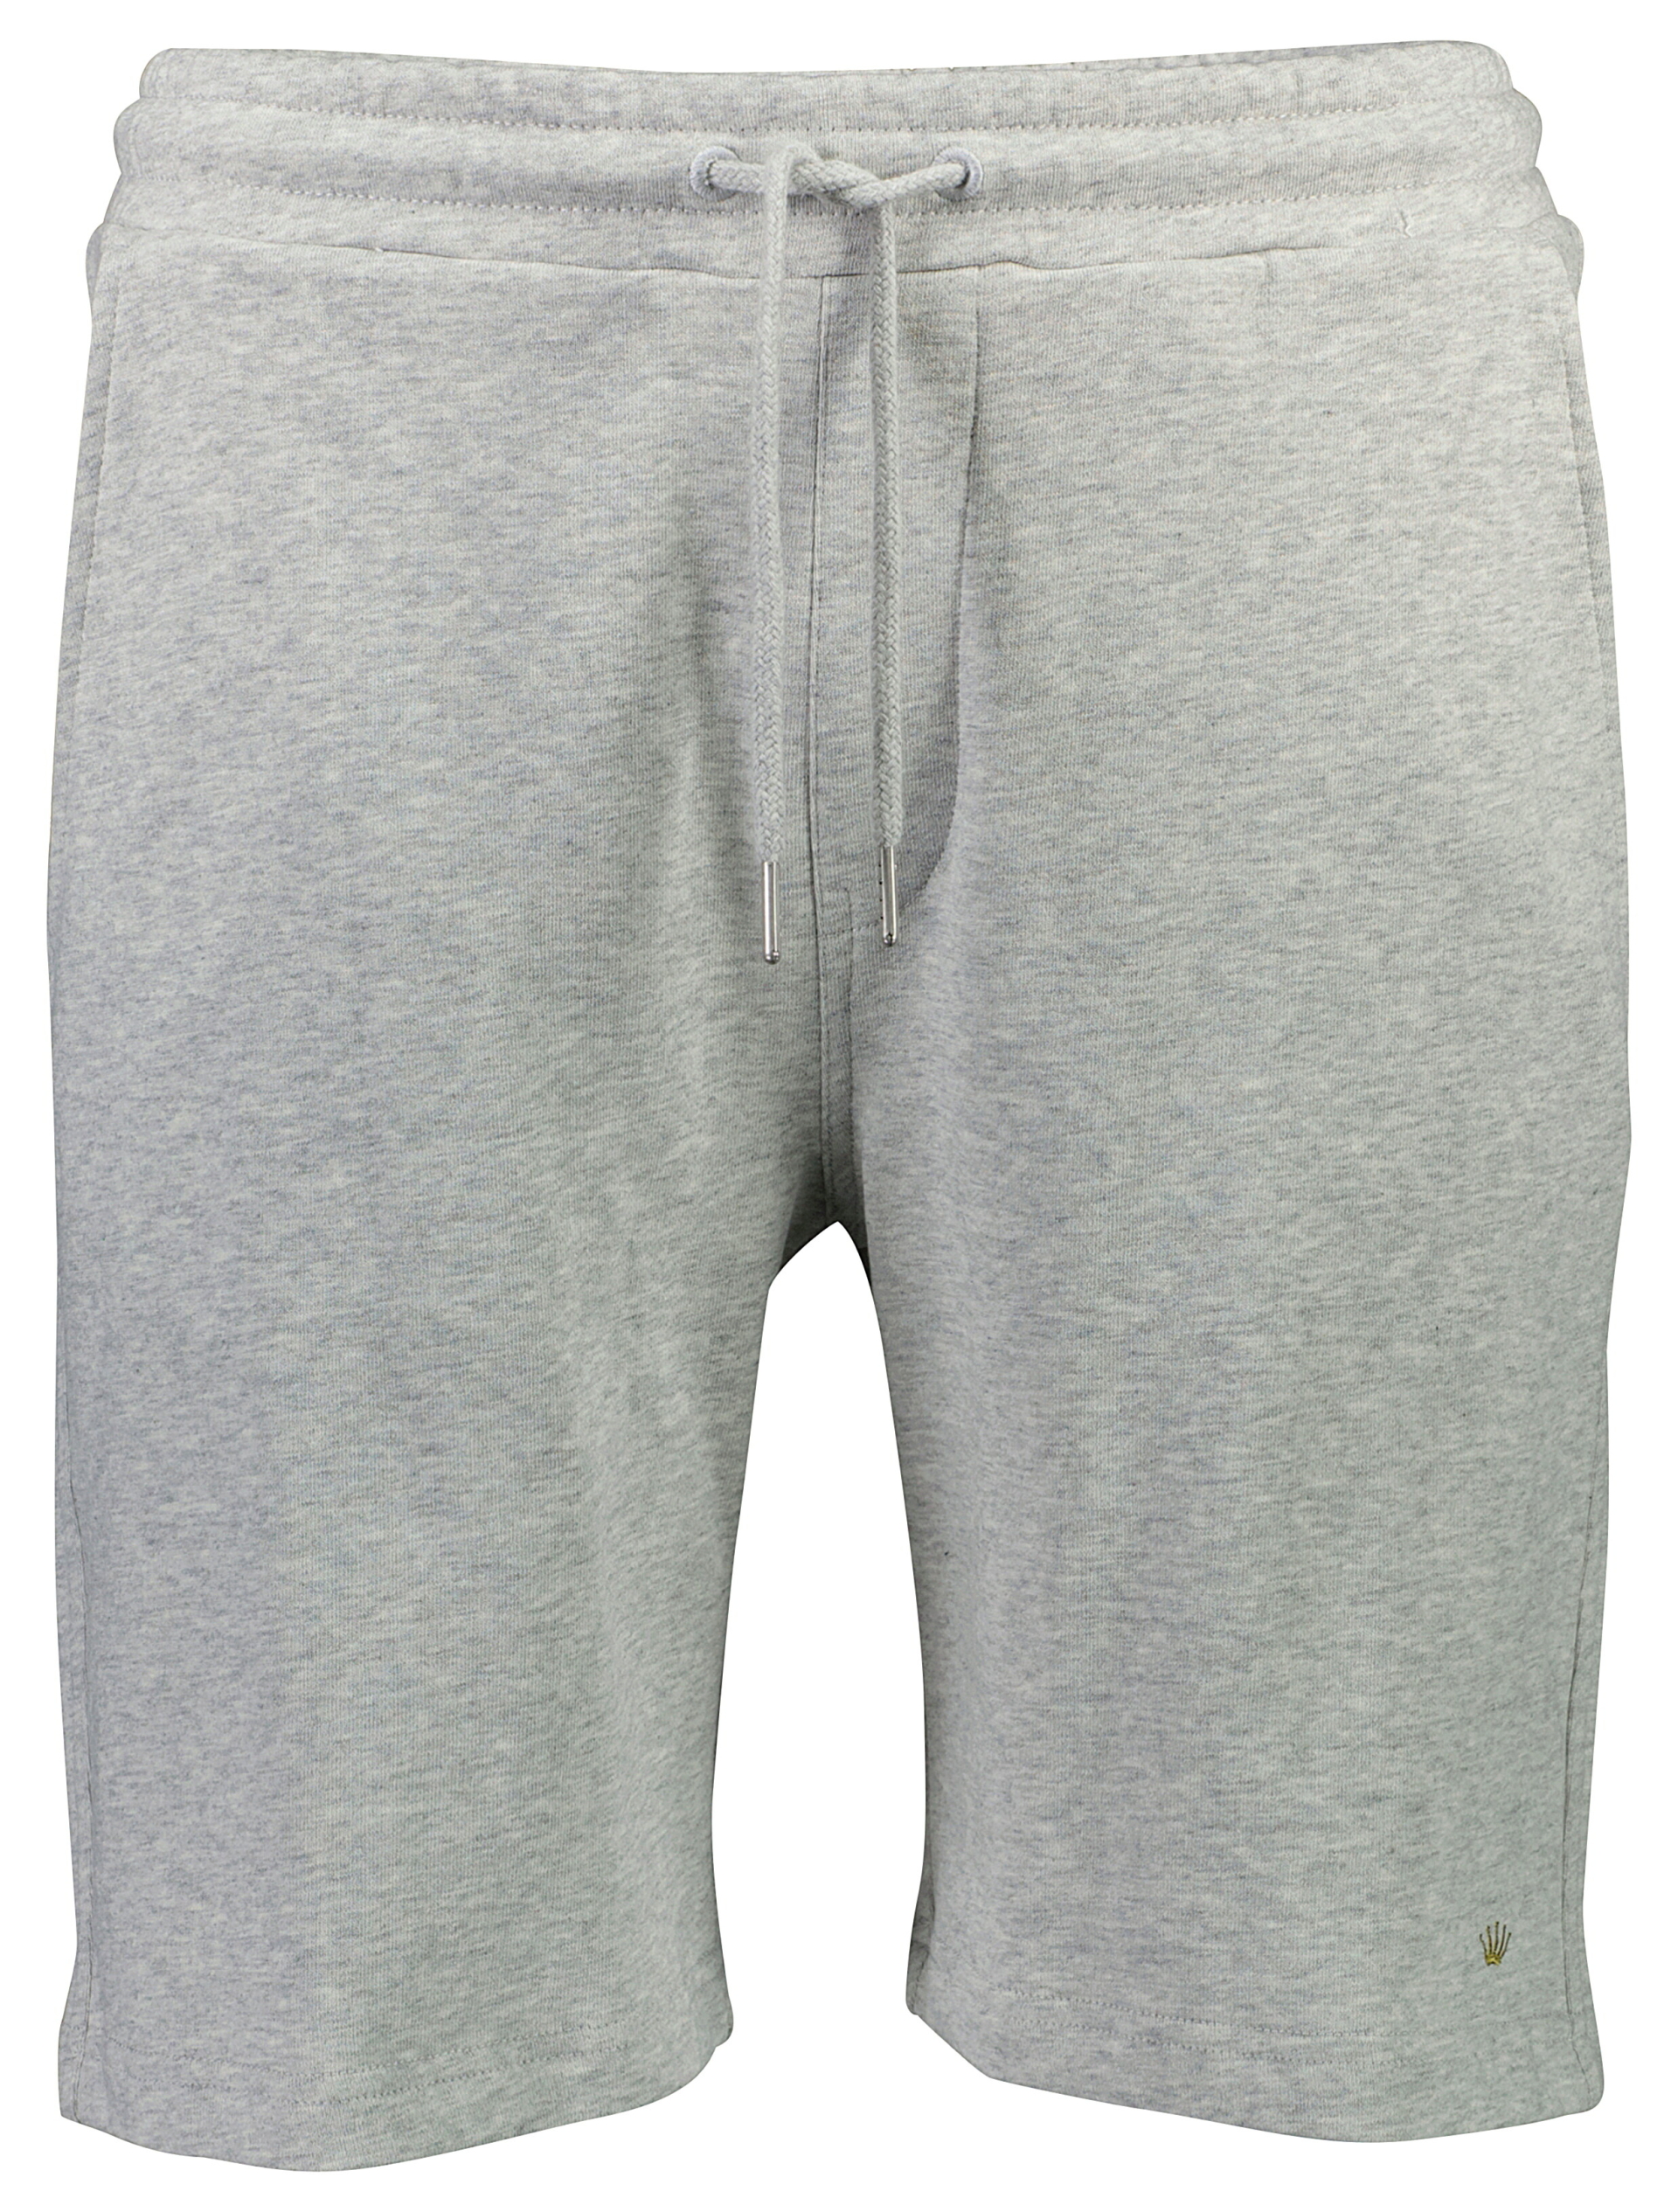 Junk de Luxe Casual shorts grå / lt grey mel